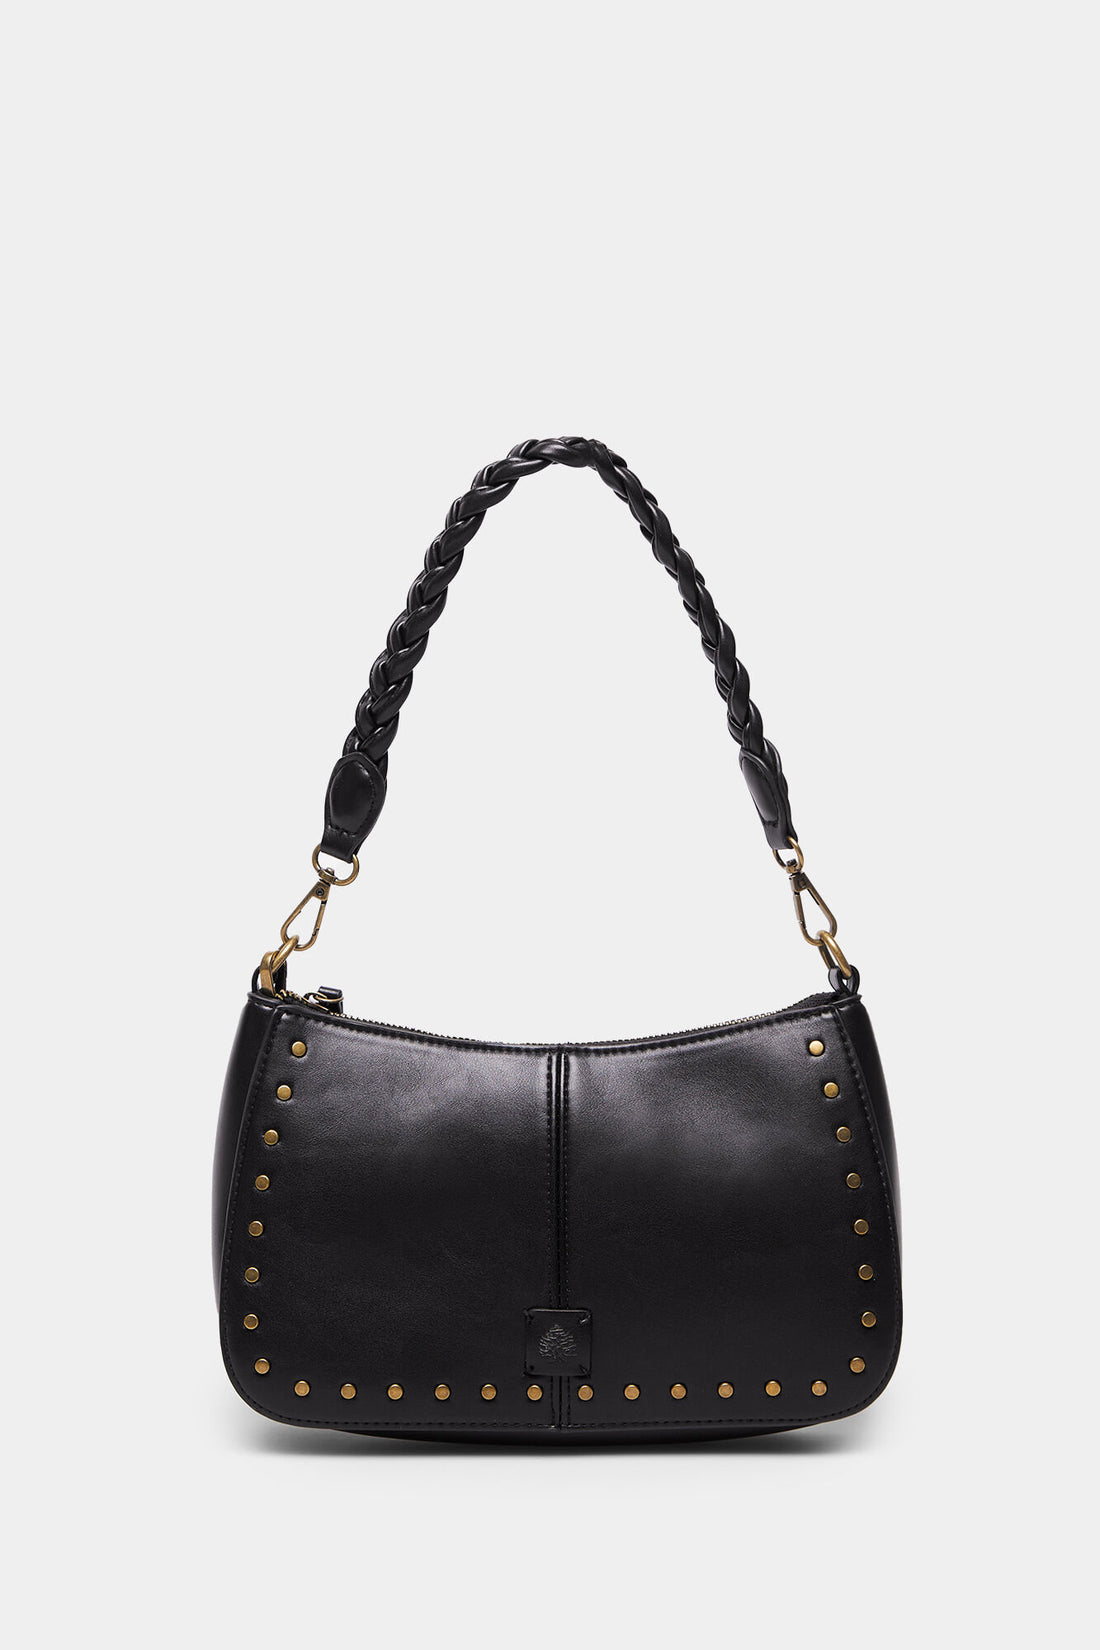 Black Shoulder Bag With Braided Strap_8527381_01_01